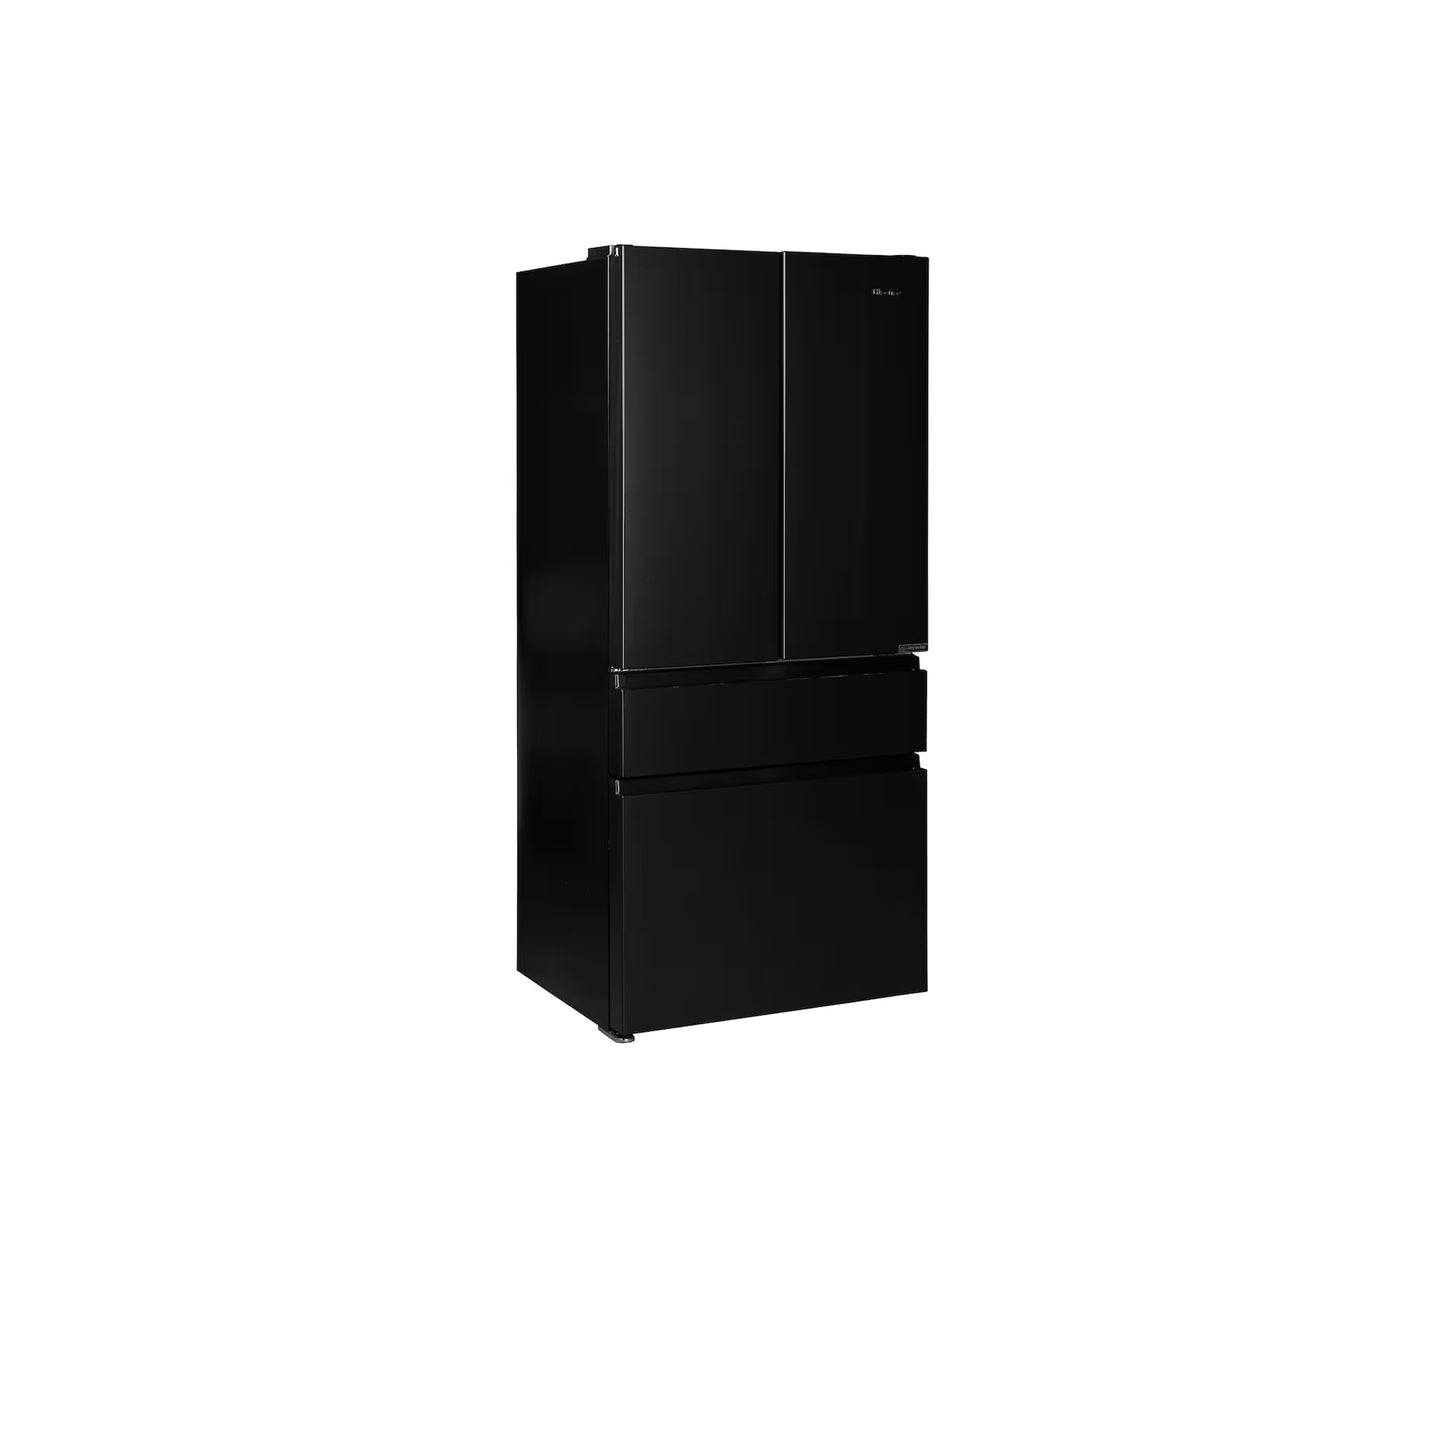 ثلاجة مخصصة بباب فرنسي بأربعة أبواب (23 قدمًا مكعبًا) مع ألوان لوحة الباب قابلة للتخصيص ومركز المشروبات™ بزجاج فحمي